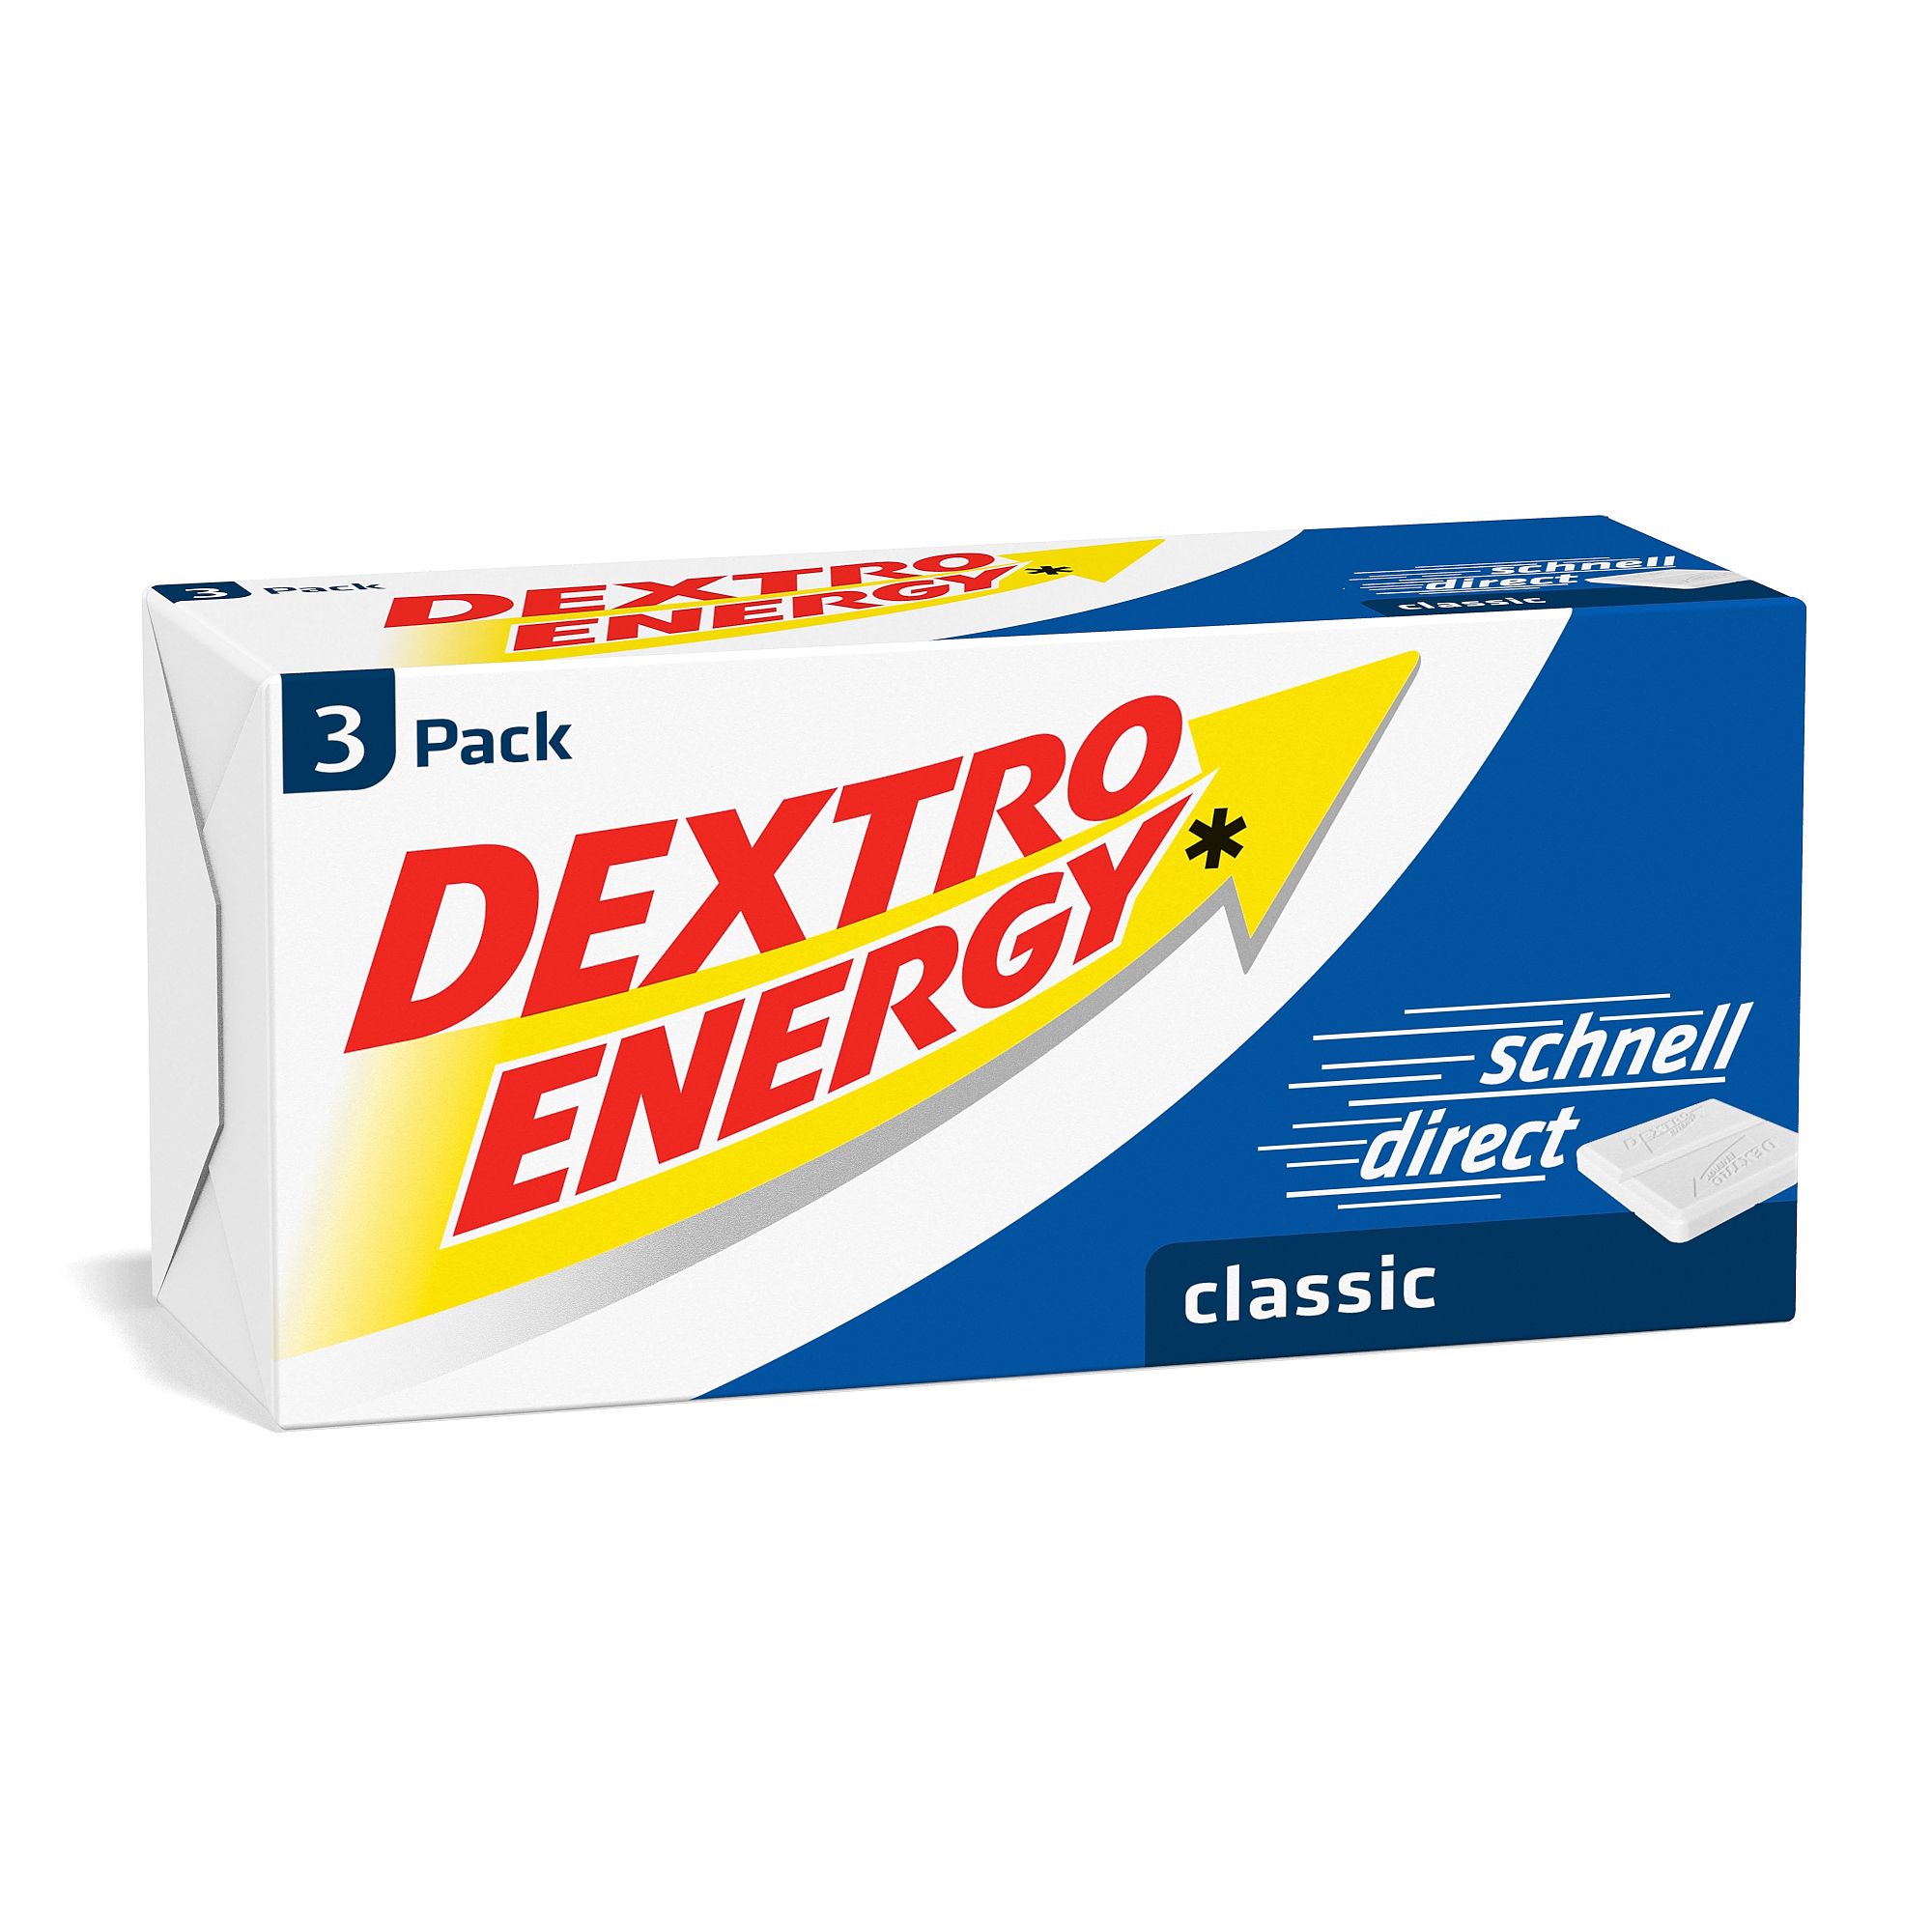 Image of Dextro Energy classic Stange